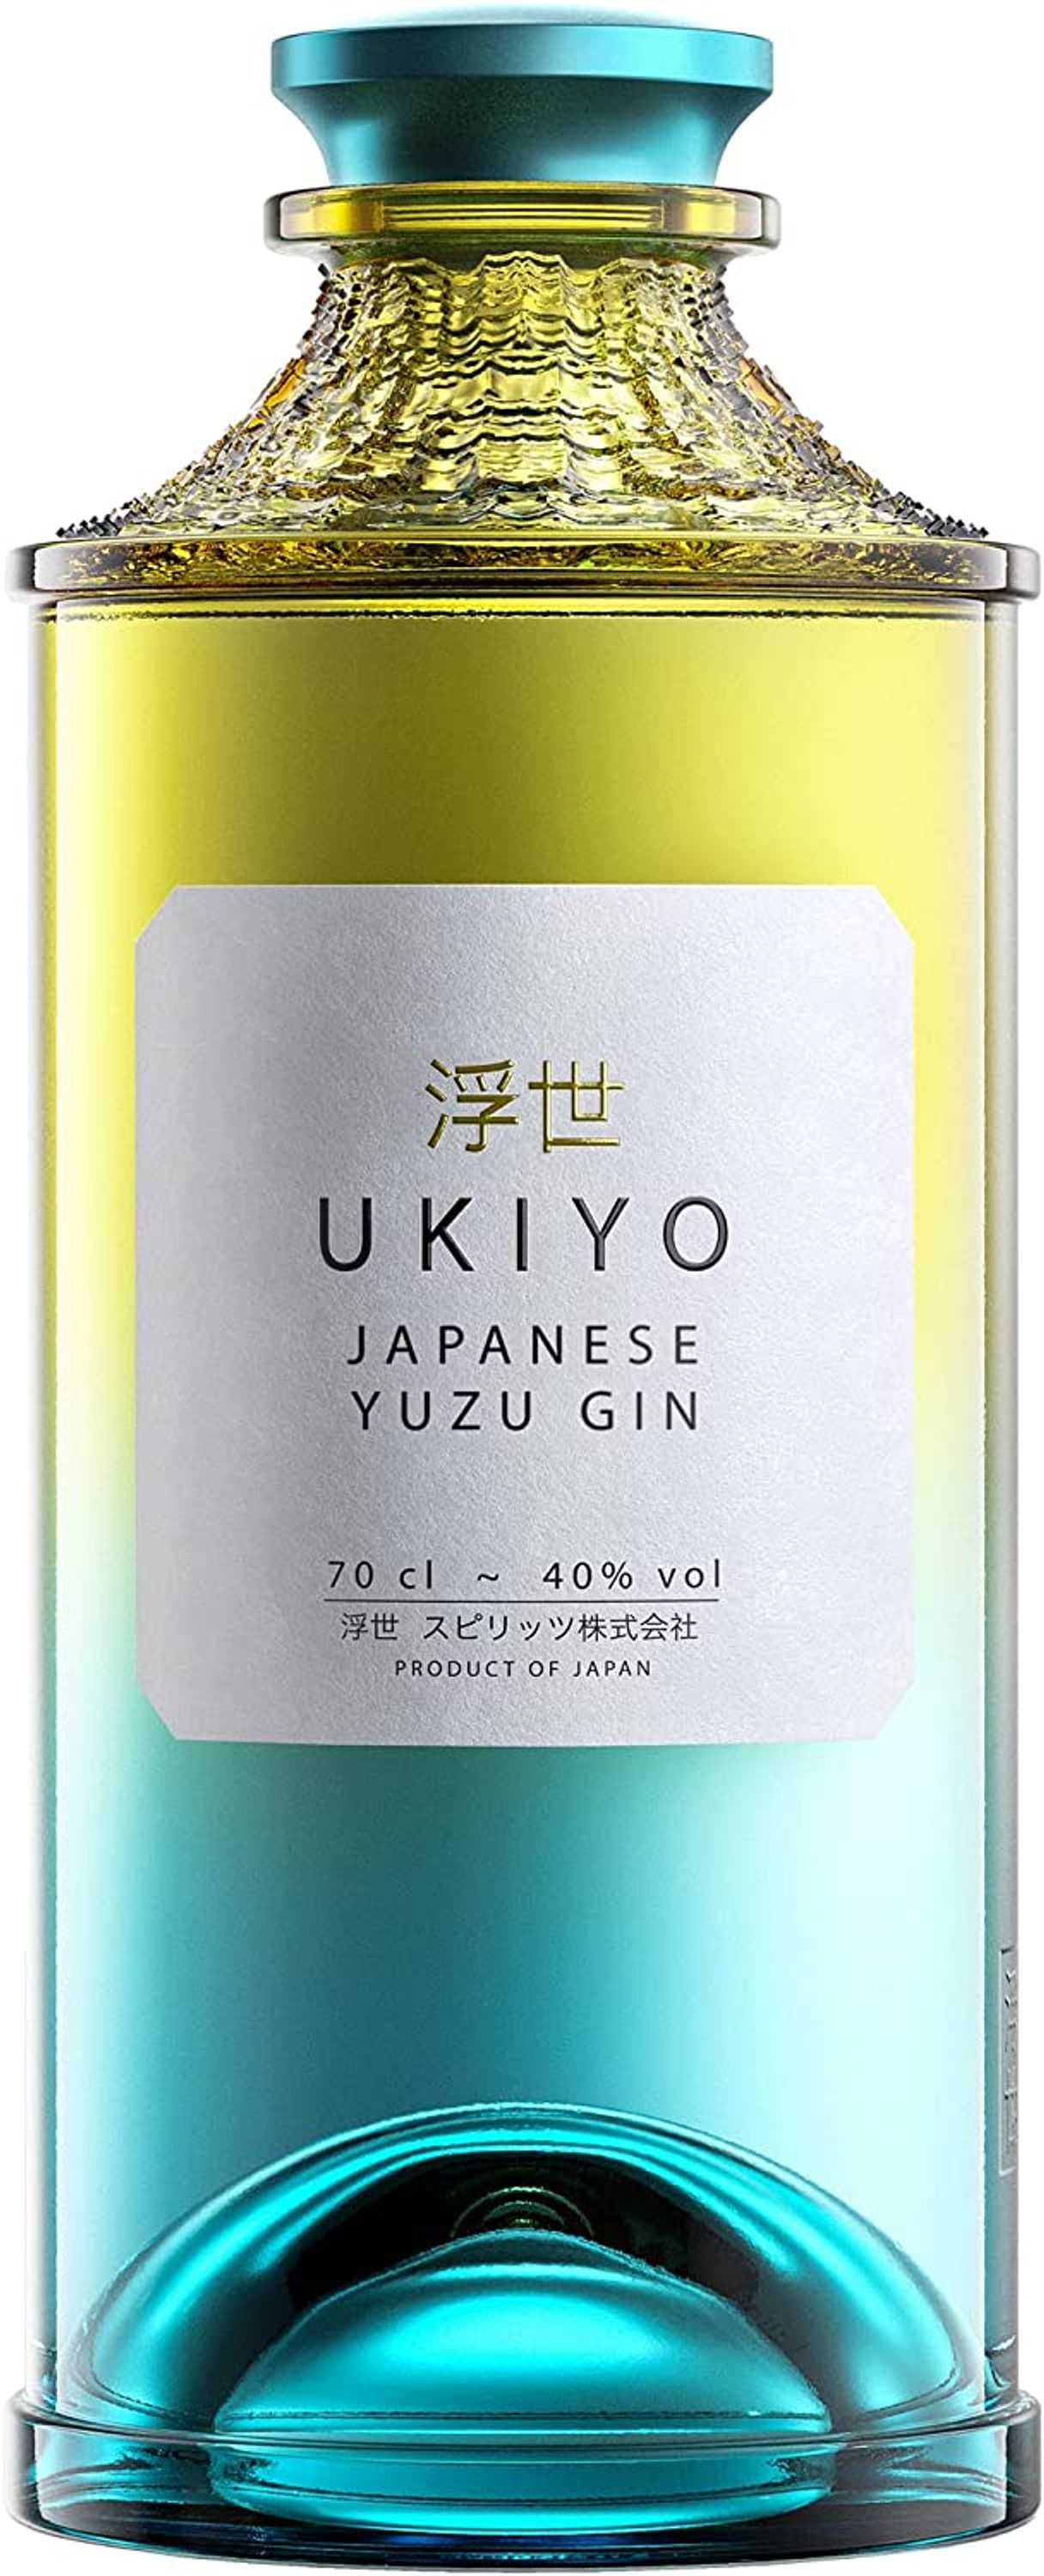 Ukiyo Japanese Yuzu Gin 0,7l, alc. 40 Vol.-% Gin Japan